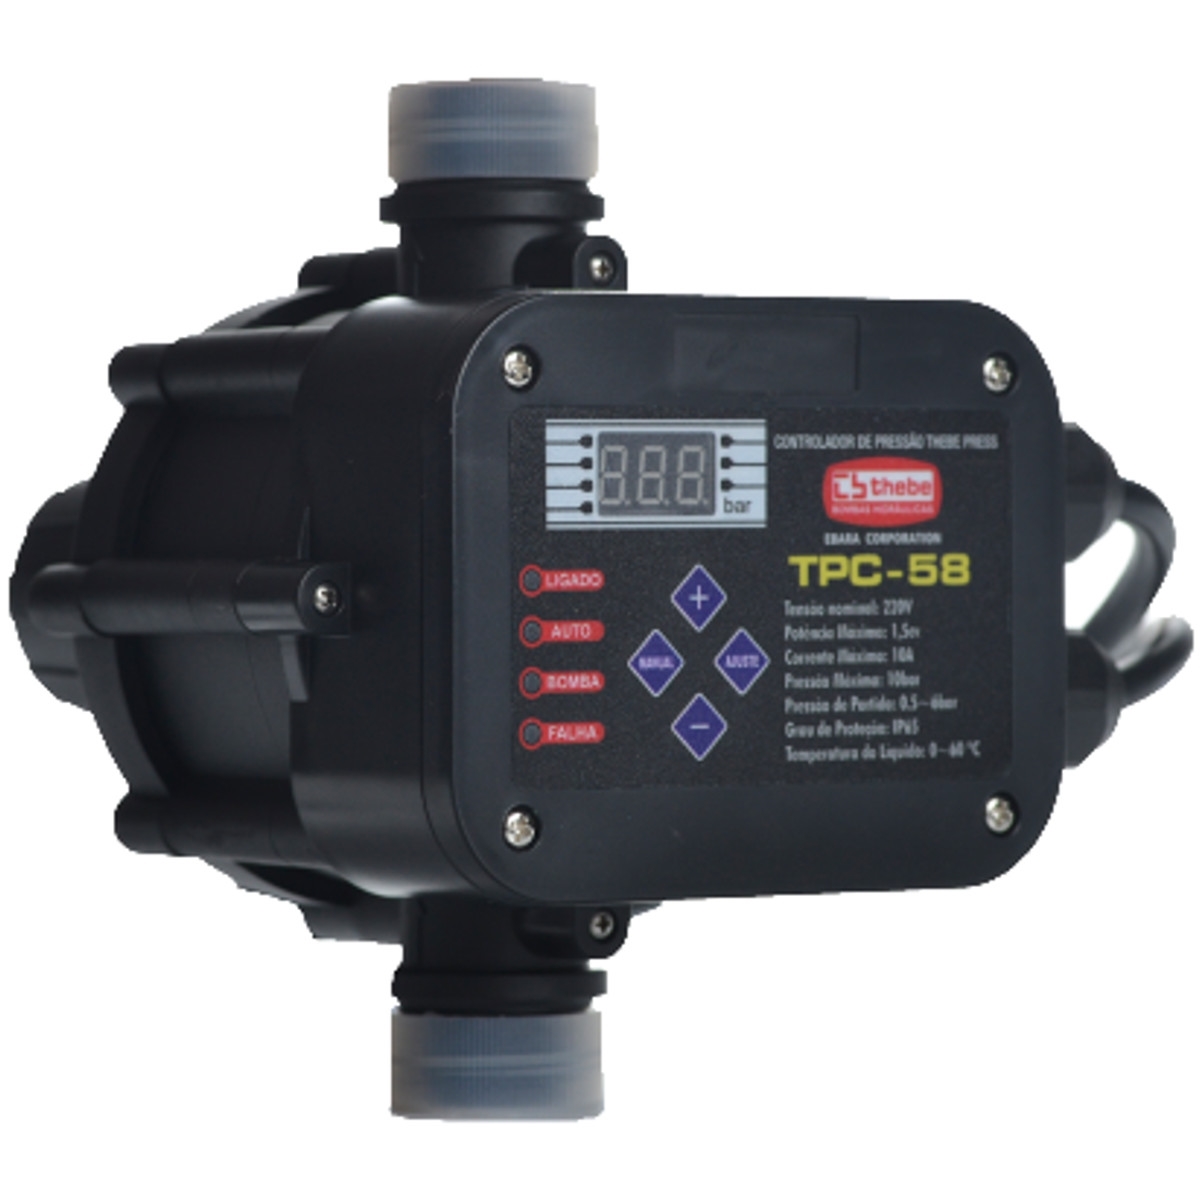 Controlador Automático de Pressão Thebe Tpc-58 03,00Cv Monofásico 220v